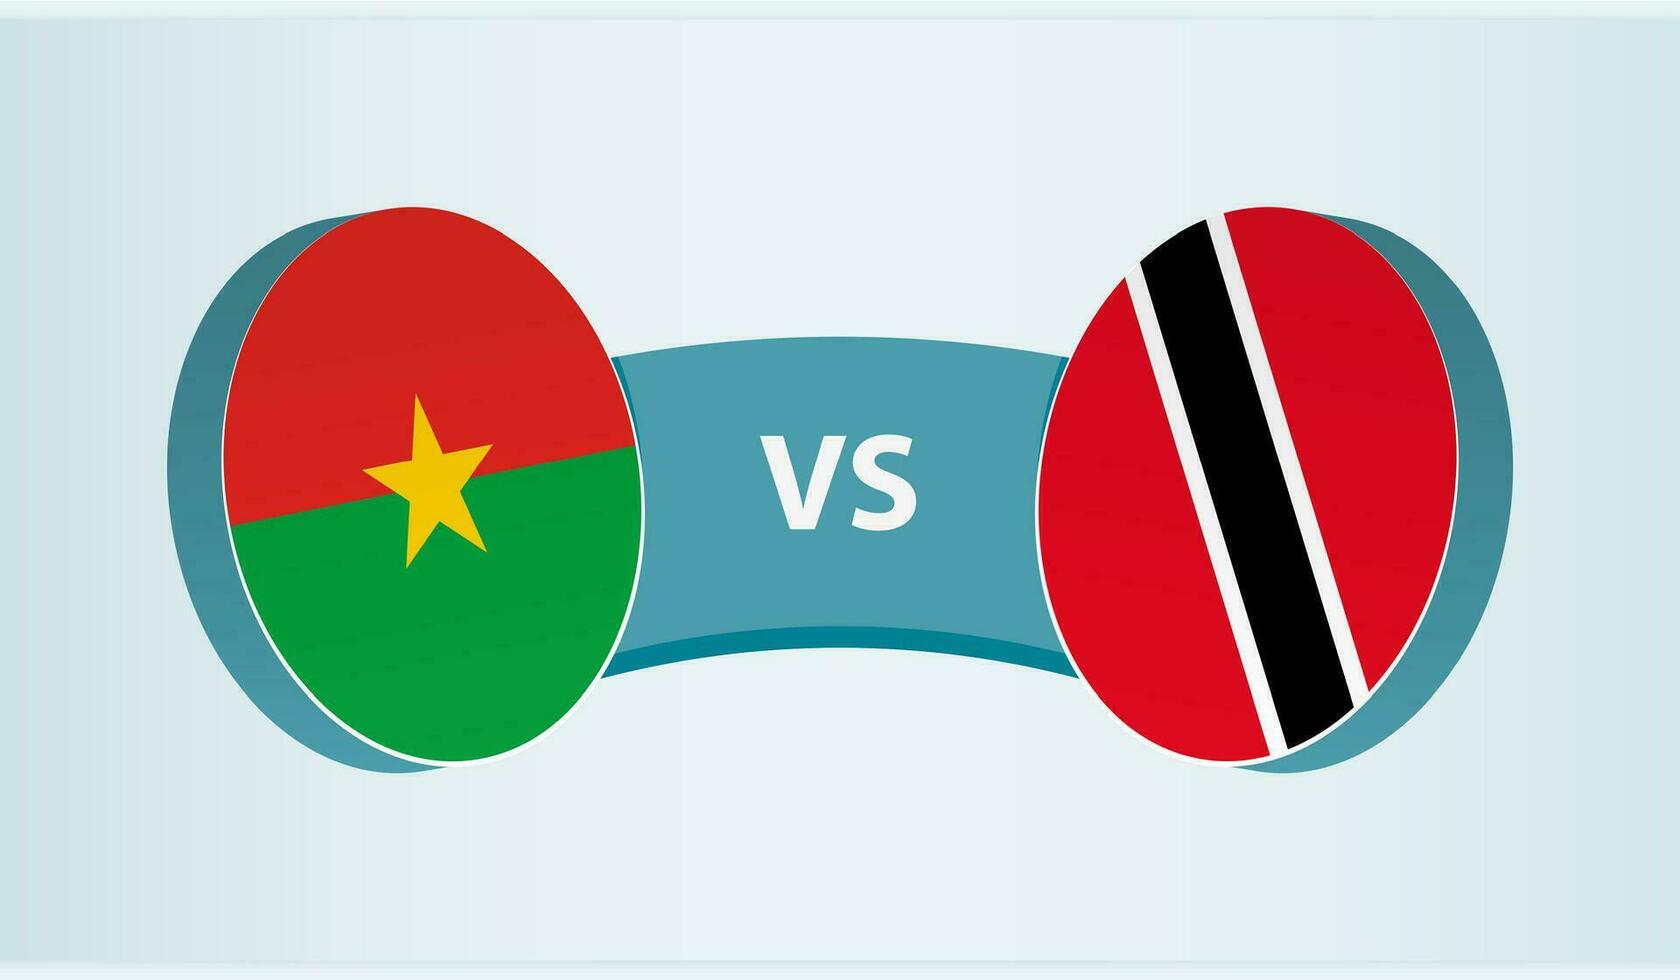 Burkina faso versus Trinidad en tobago, team sport- wedstrijd concept. vector